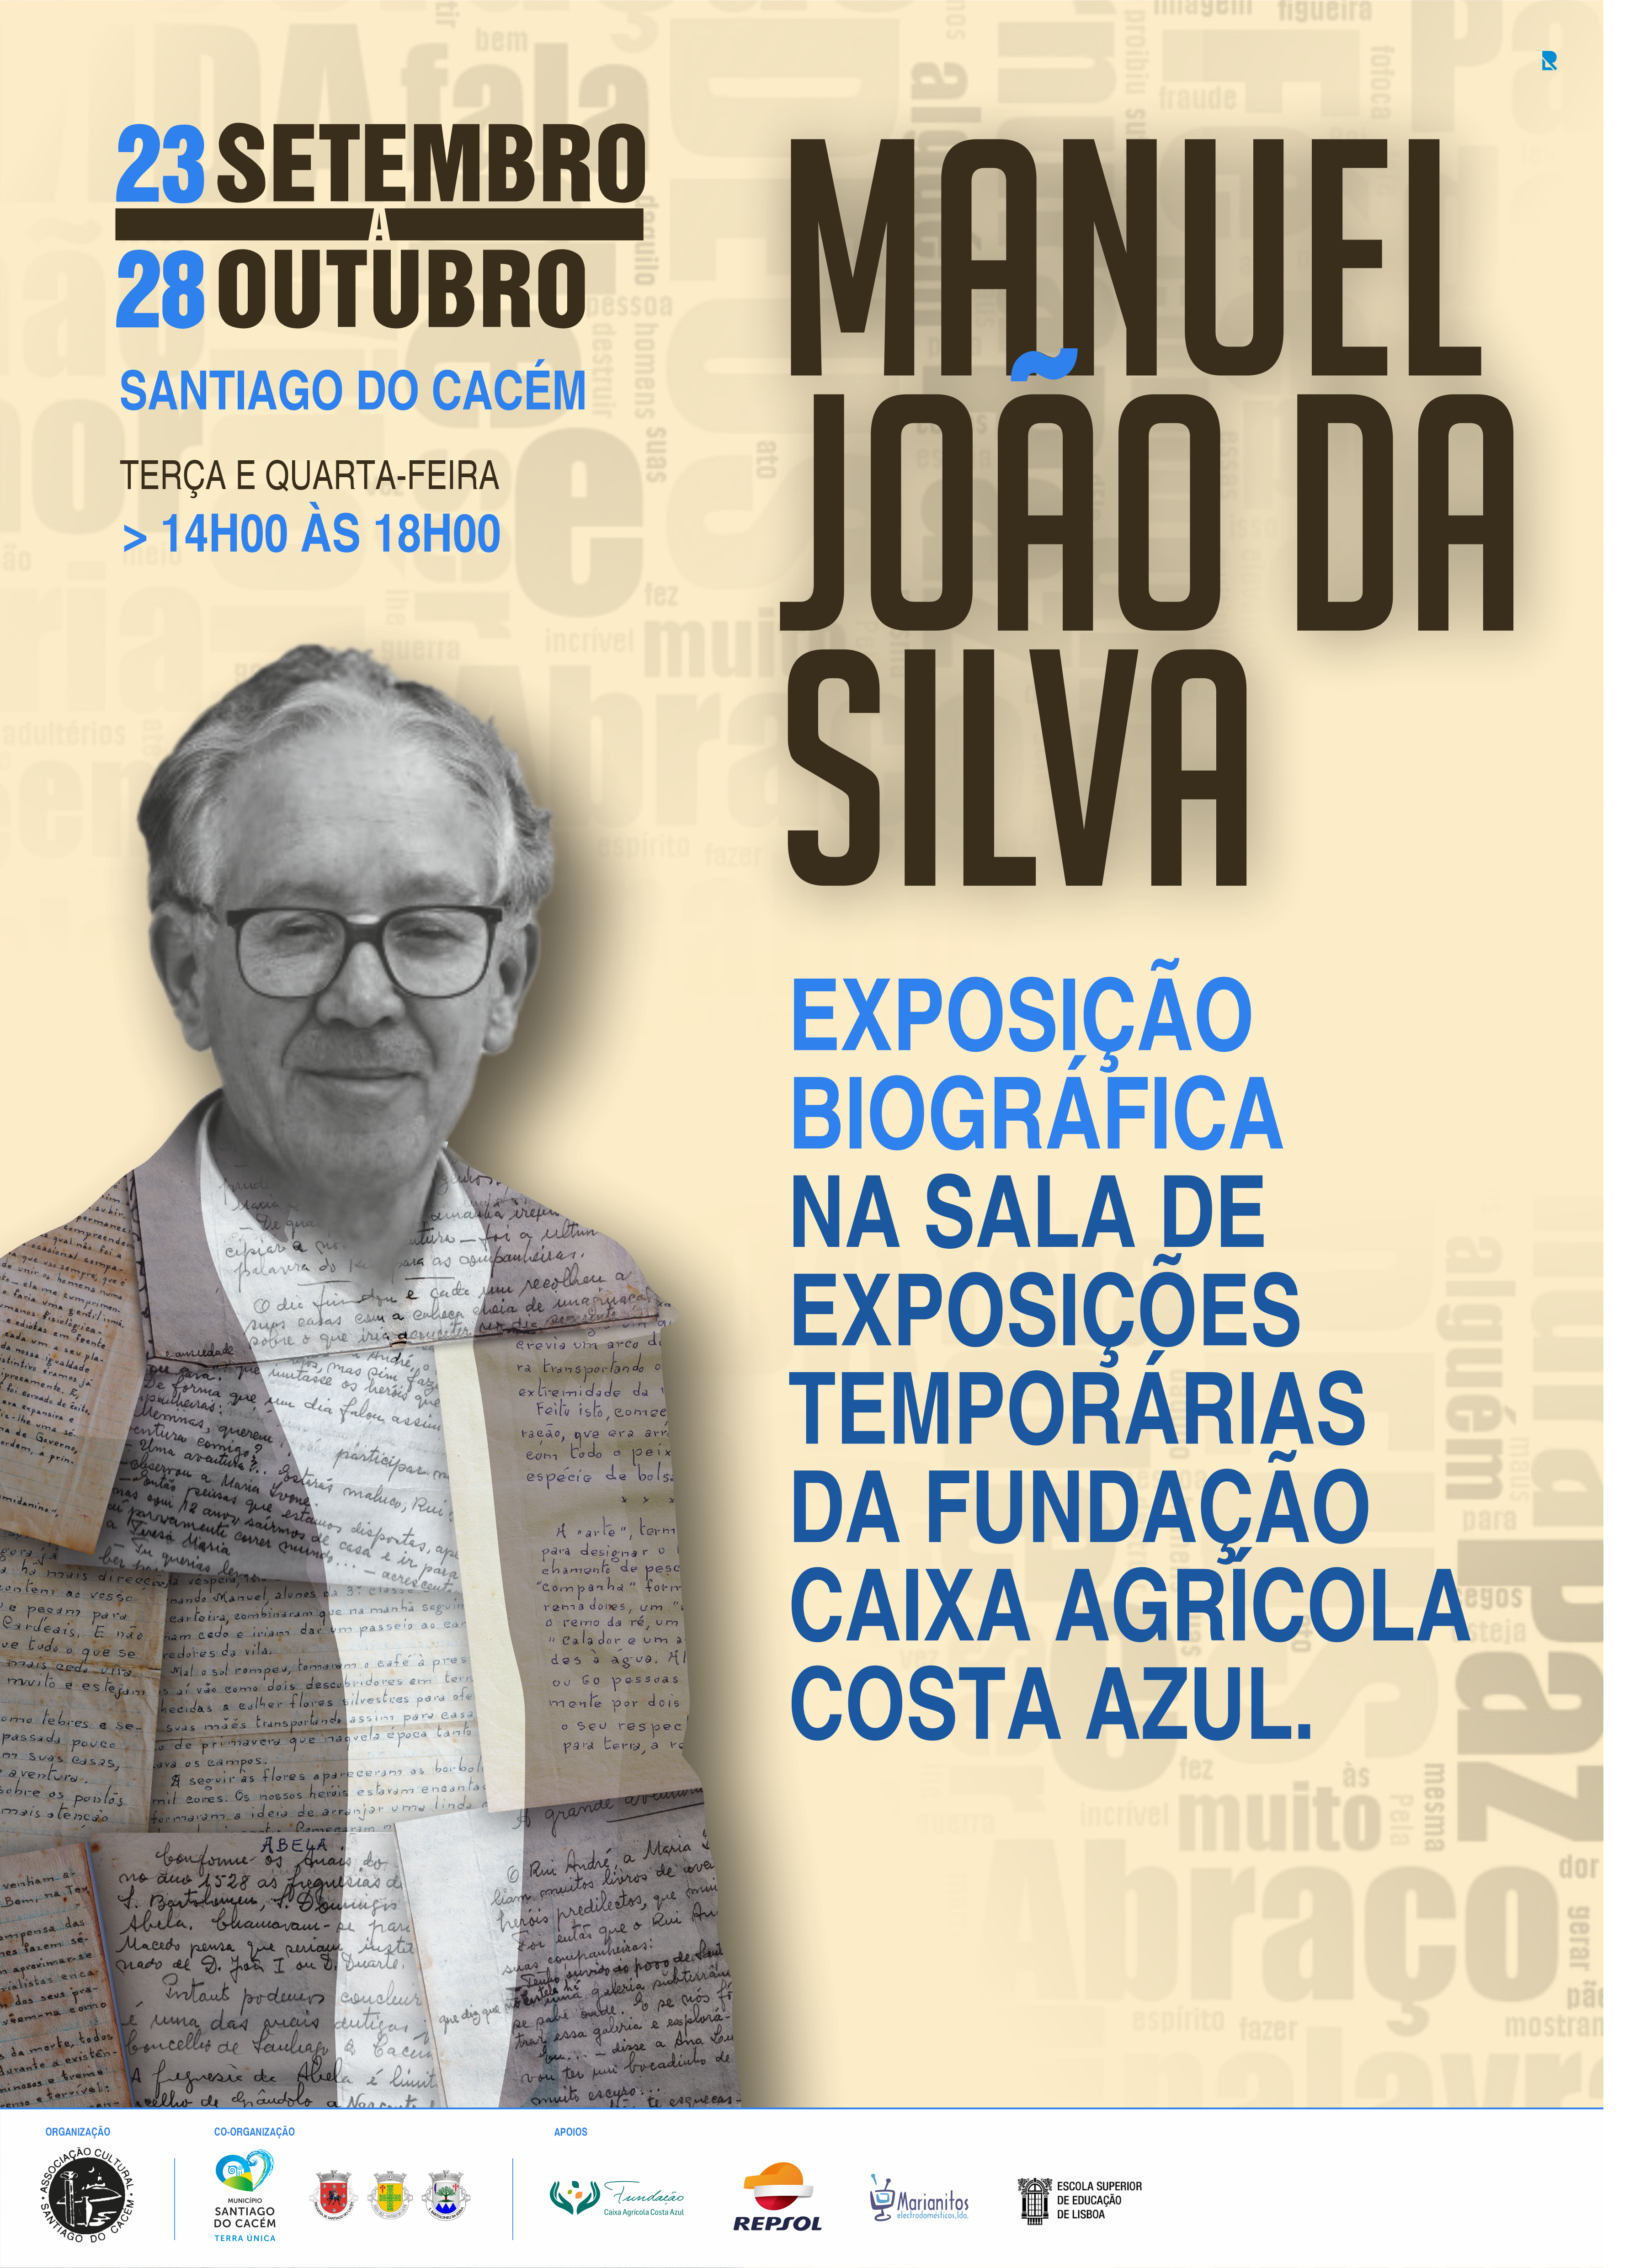 Exposição Manuel João da Silva - o guardador de palavras_v5